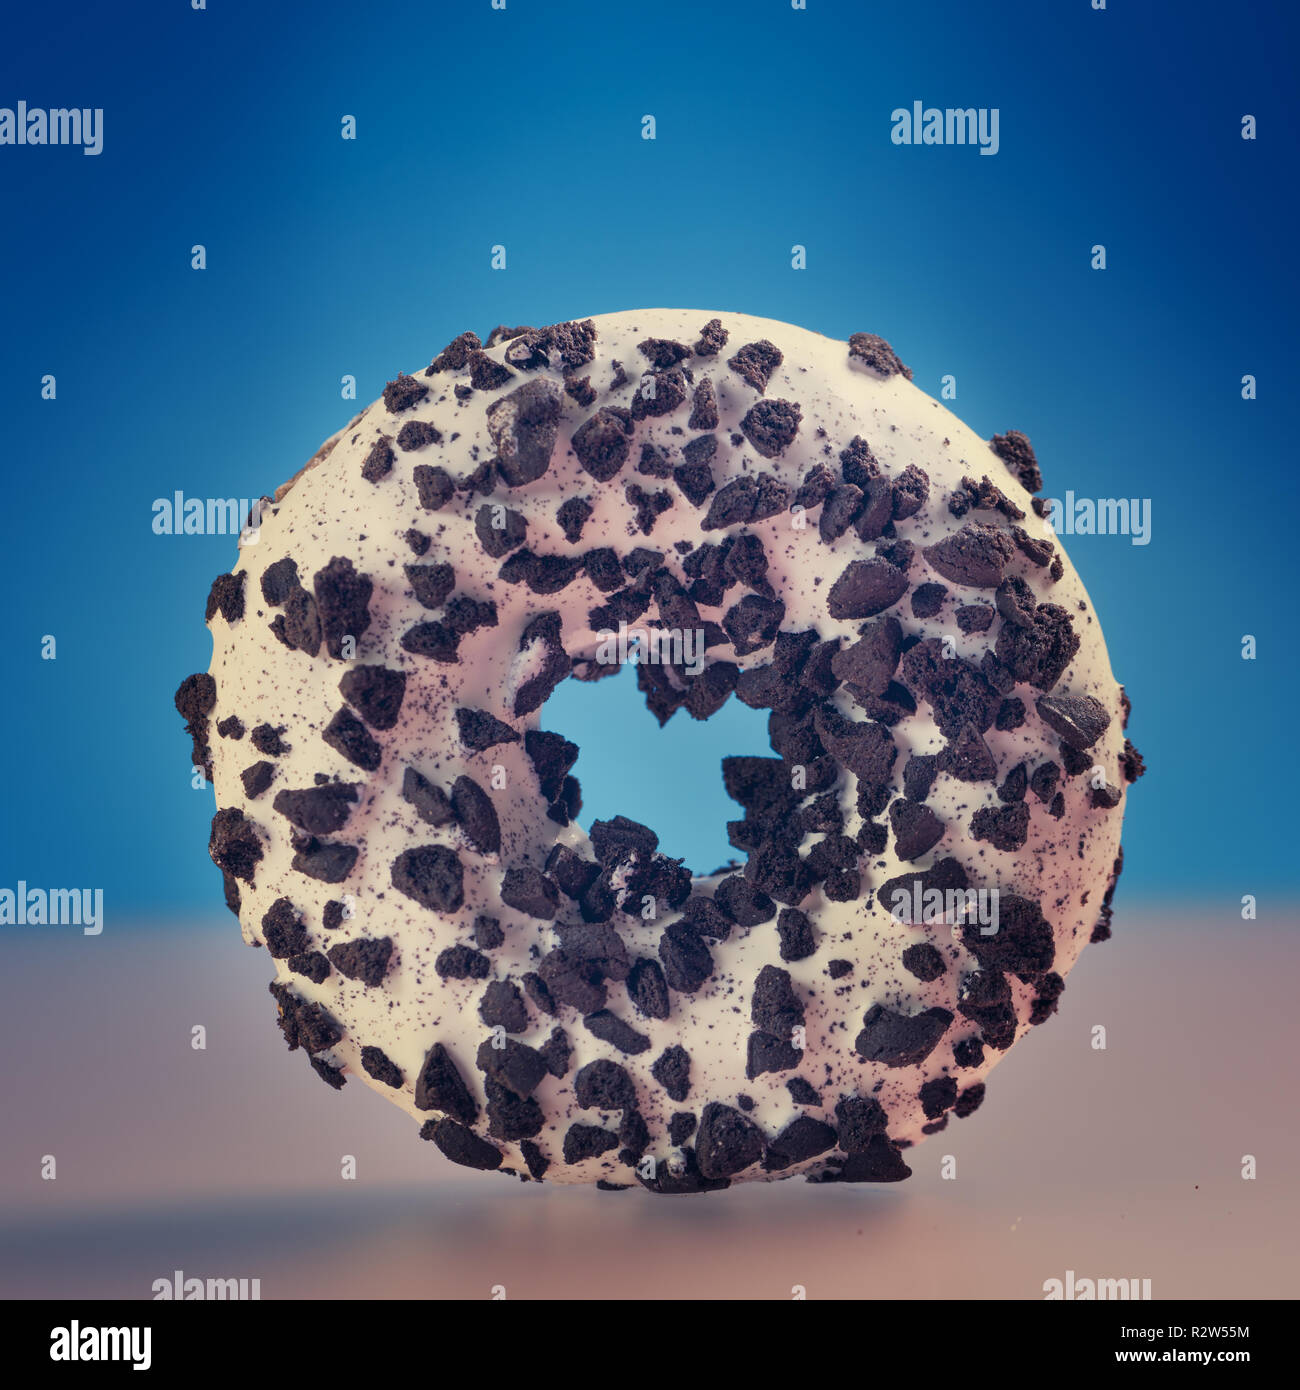 Single round donut on blue background. Stock Photo